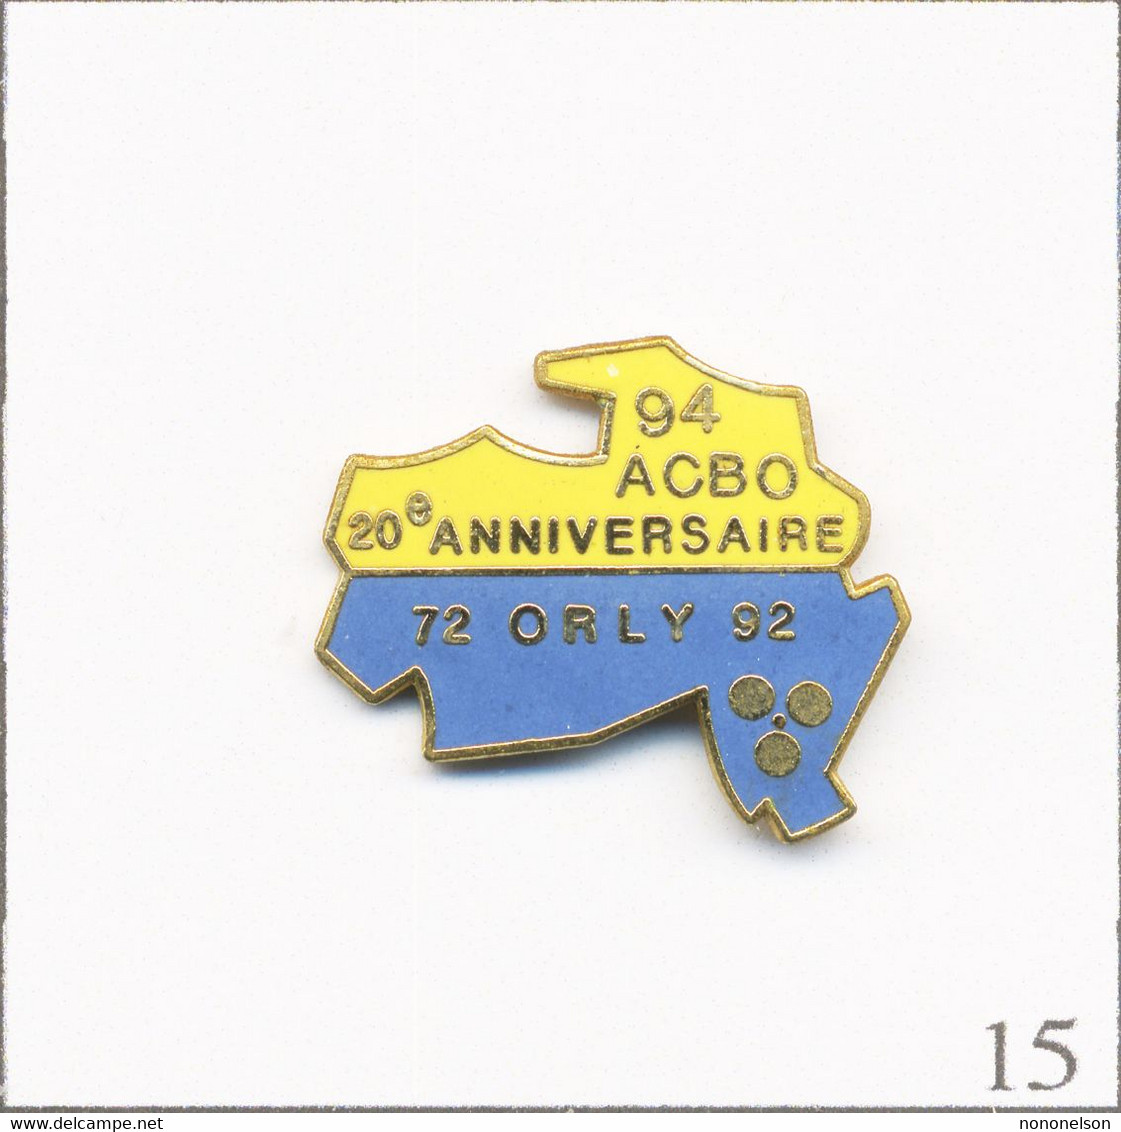 Pin's Pétanque / ACBO (Amicale Club Boulistes D’Orly) - 20è Anniversaire (1972-92). Estampillage Illisible. EGF. T772-15 - Pétanque